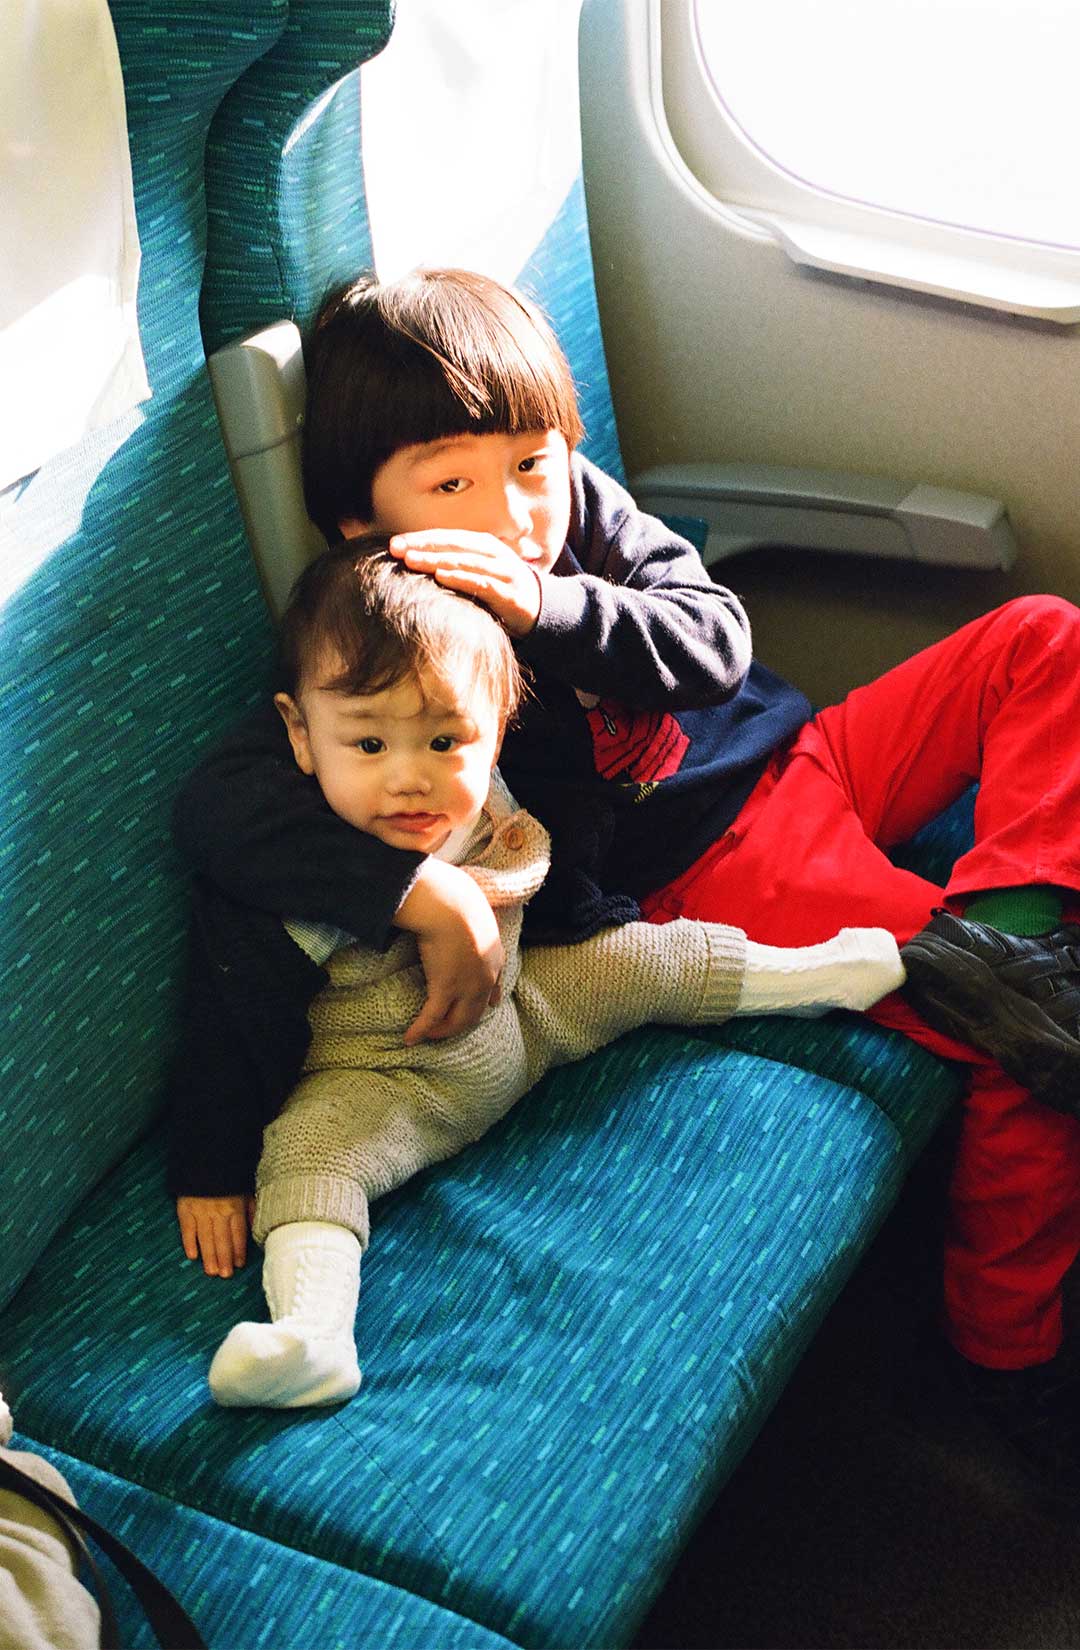 電車の席に兄弟で座っている。お兄ちゃんは赤ちゃんの頭を撫でている。